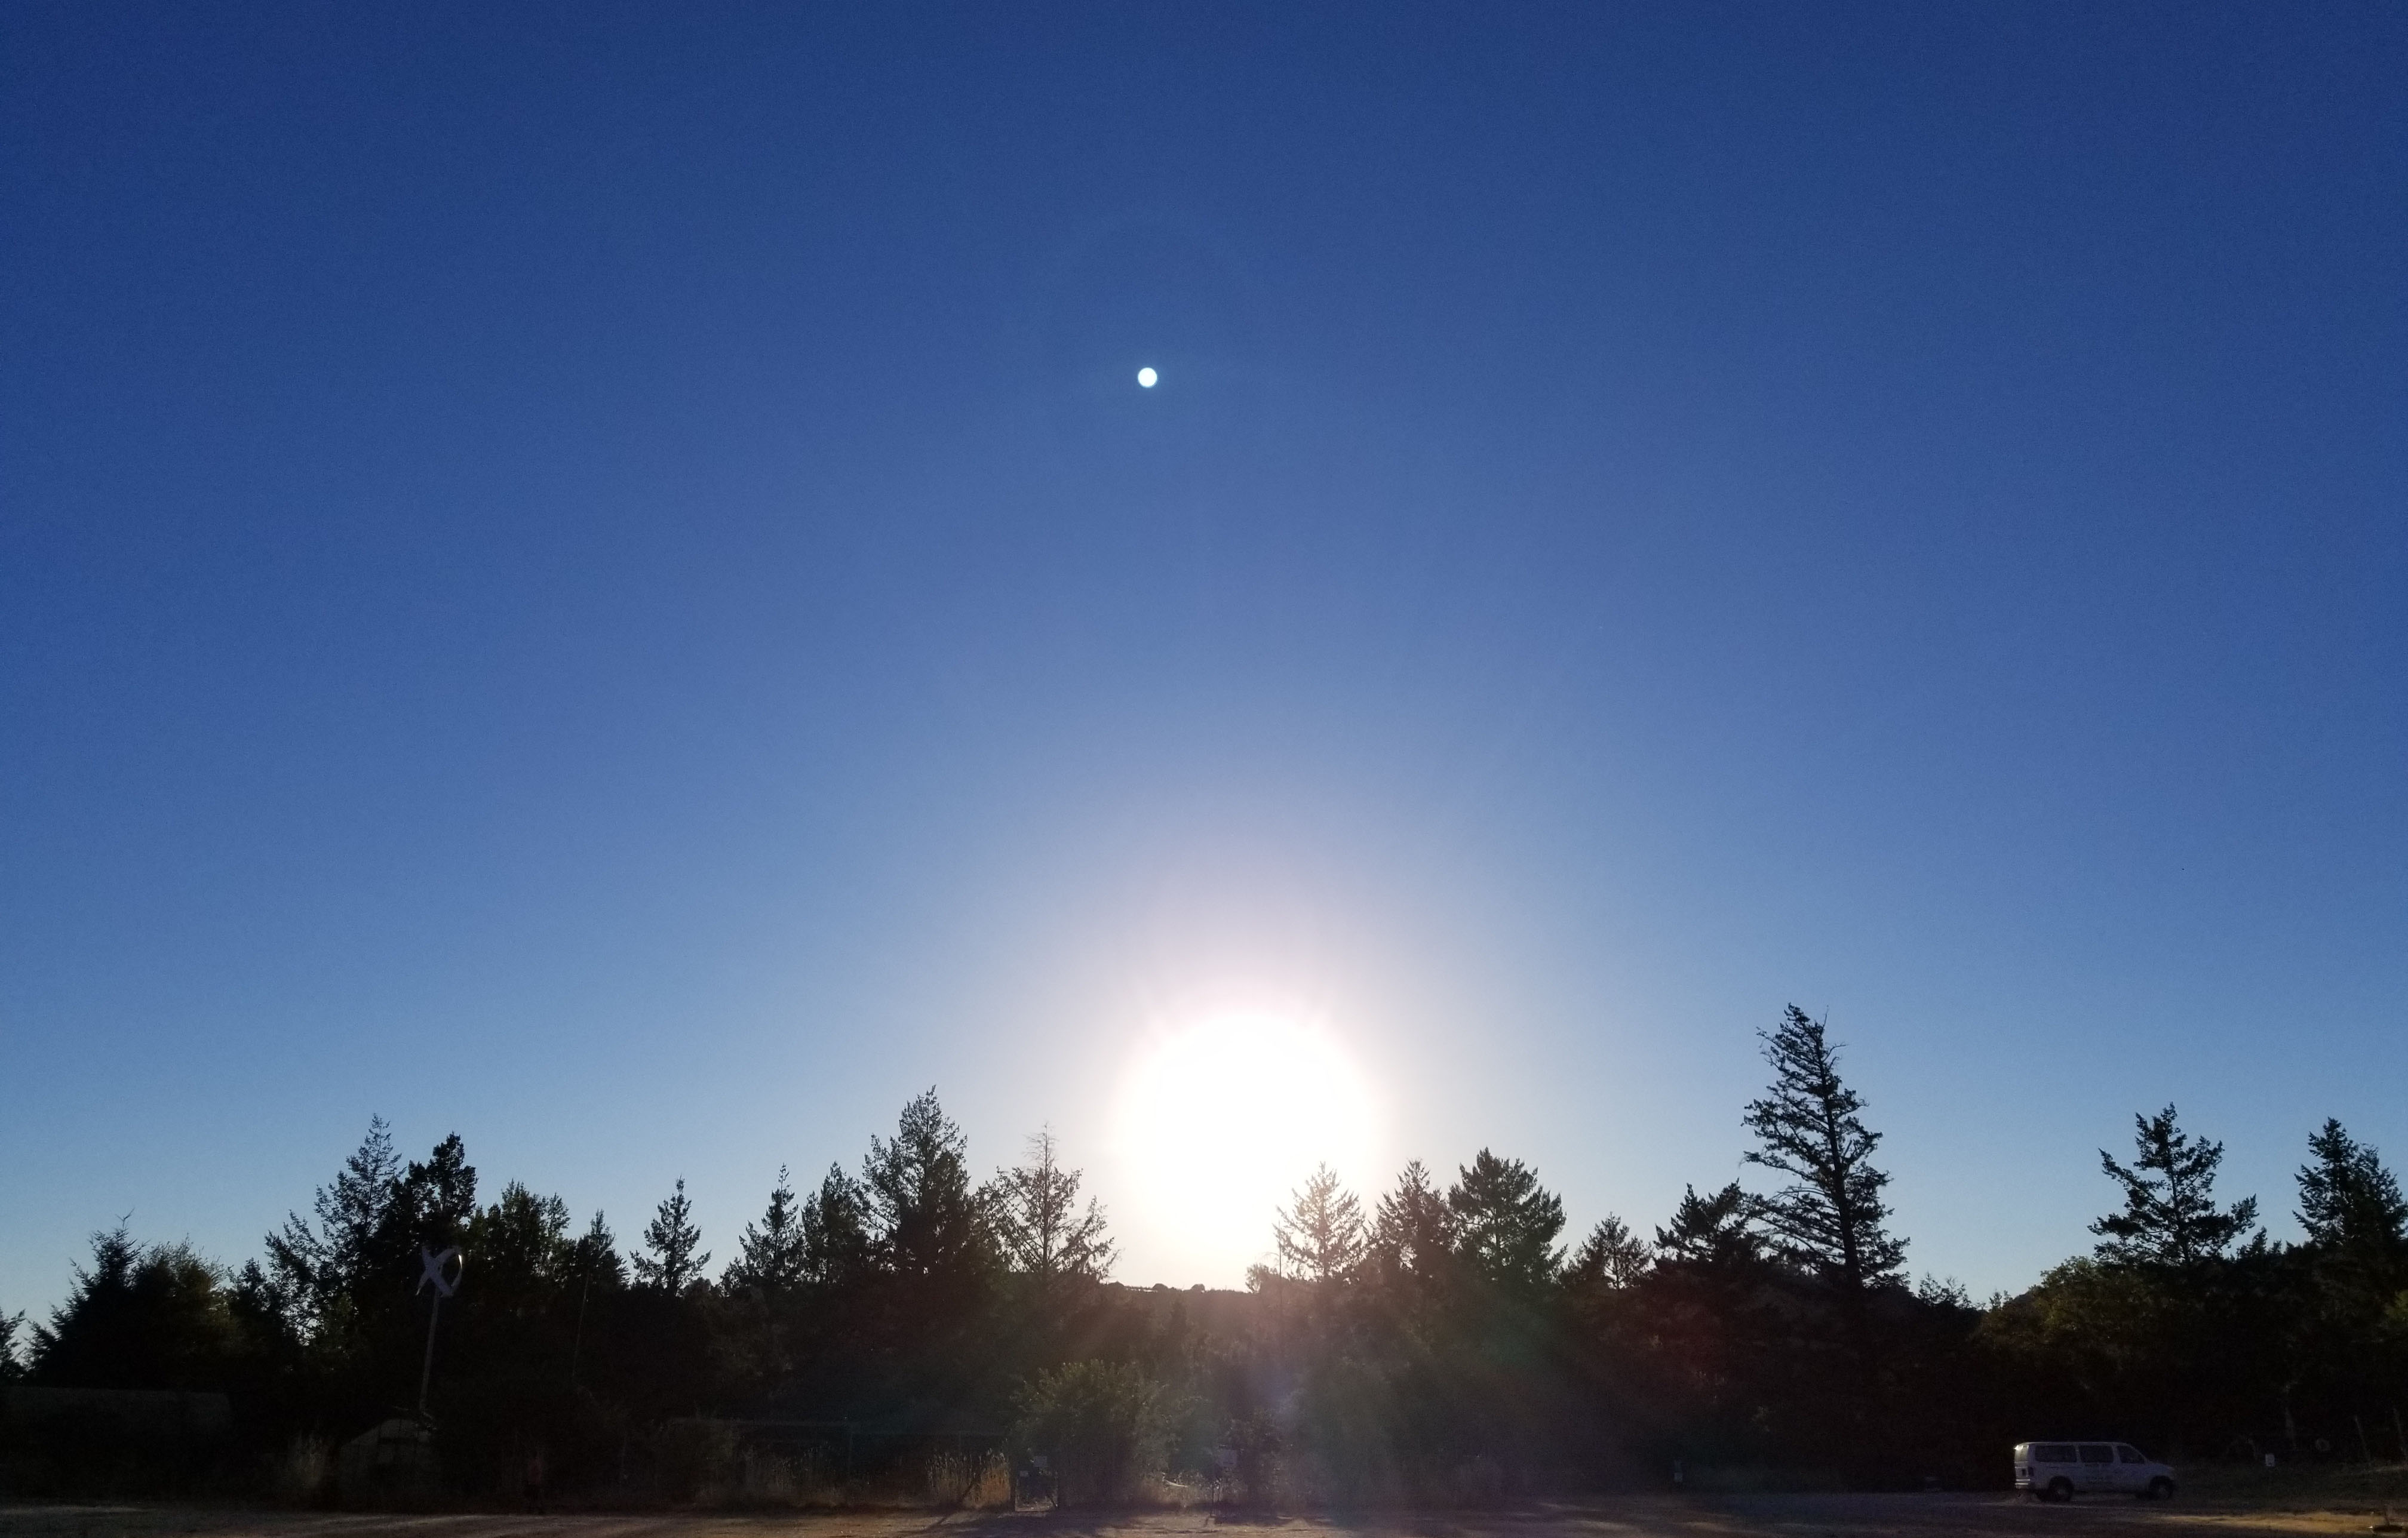 Sunrise over the town of Saratoga, California